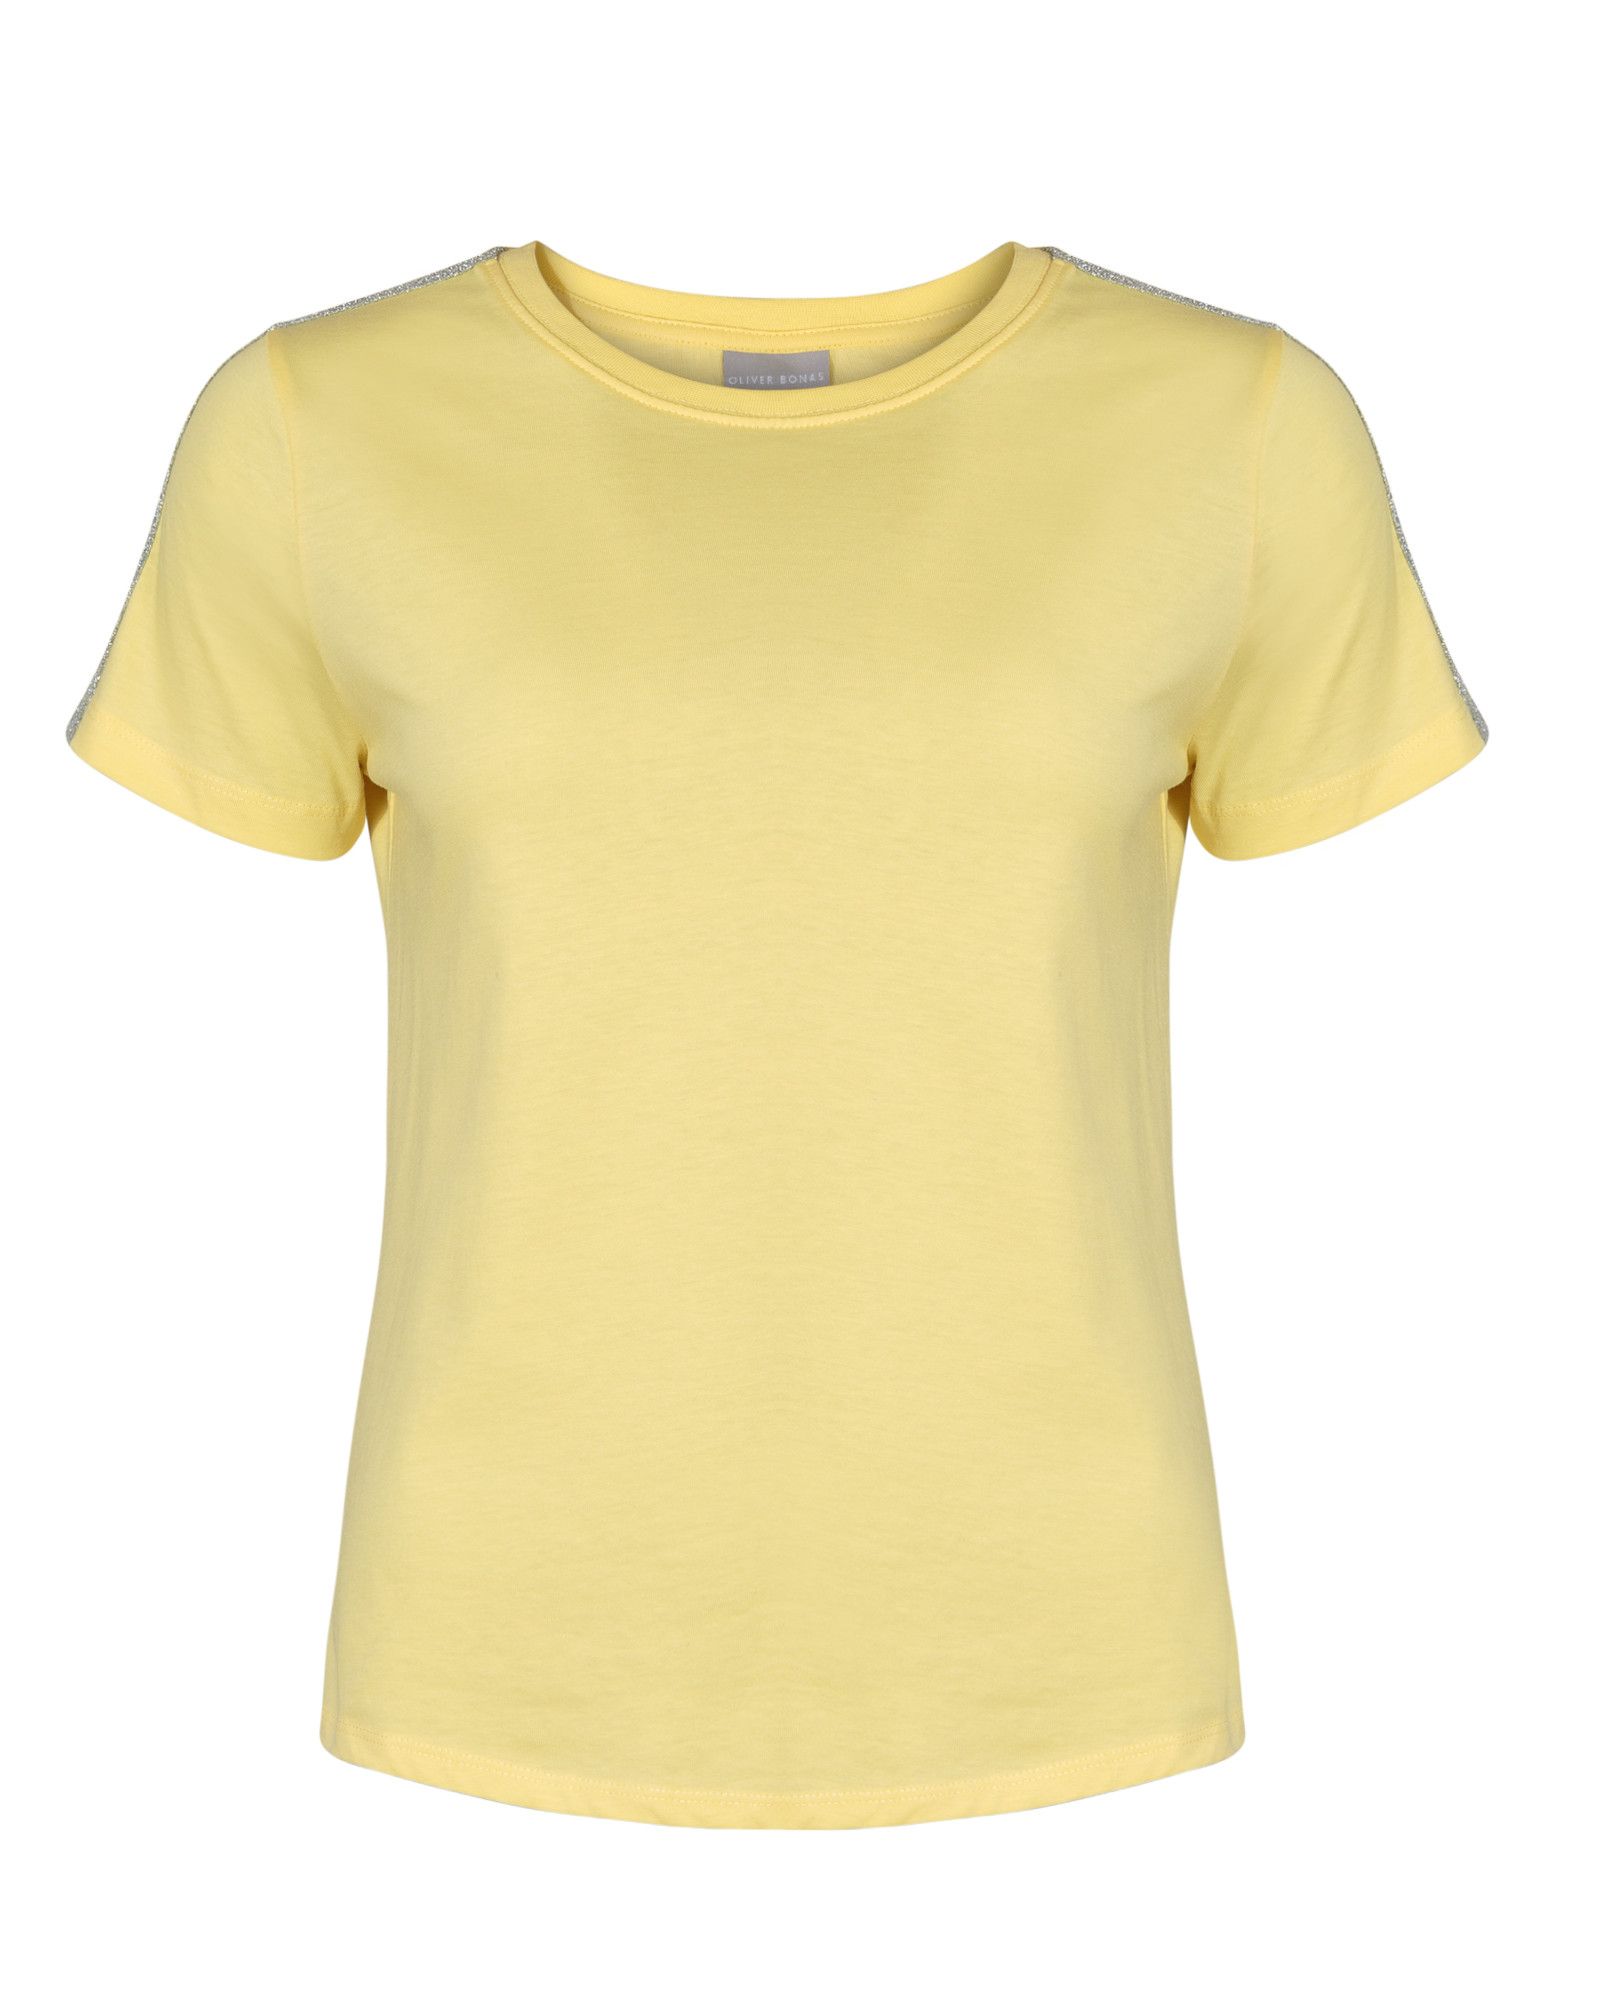 Sparkle Stripe Yellow Cotton T-Shirt | Oliver Bonas